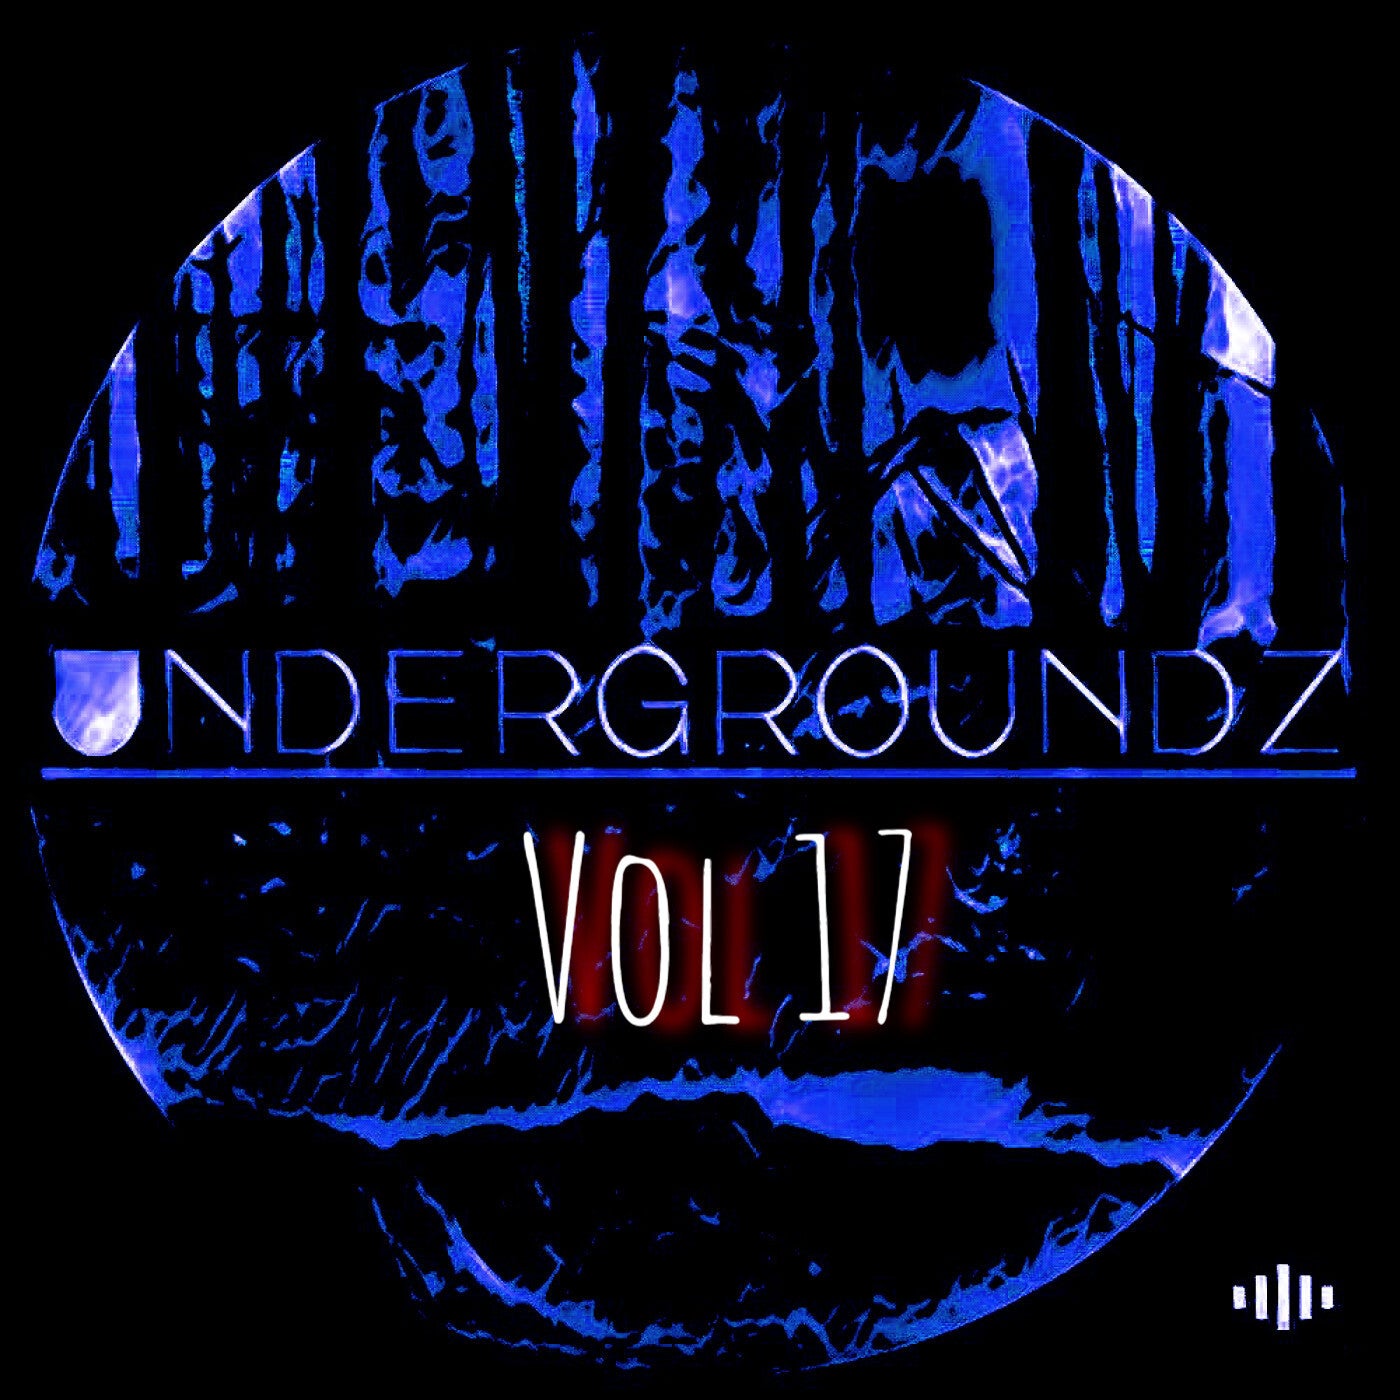 Undergroundz Vol 17